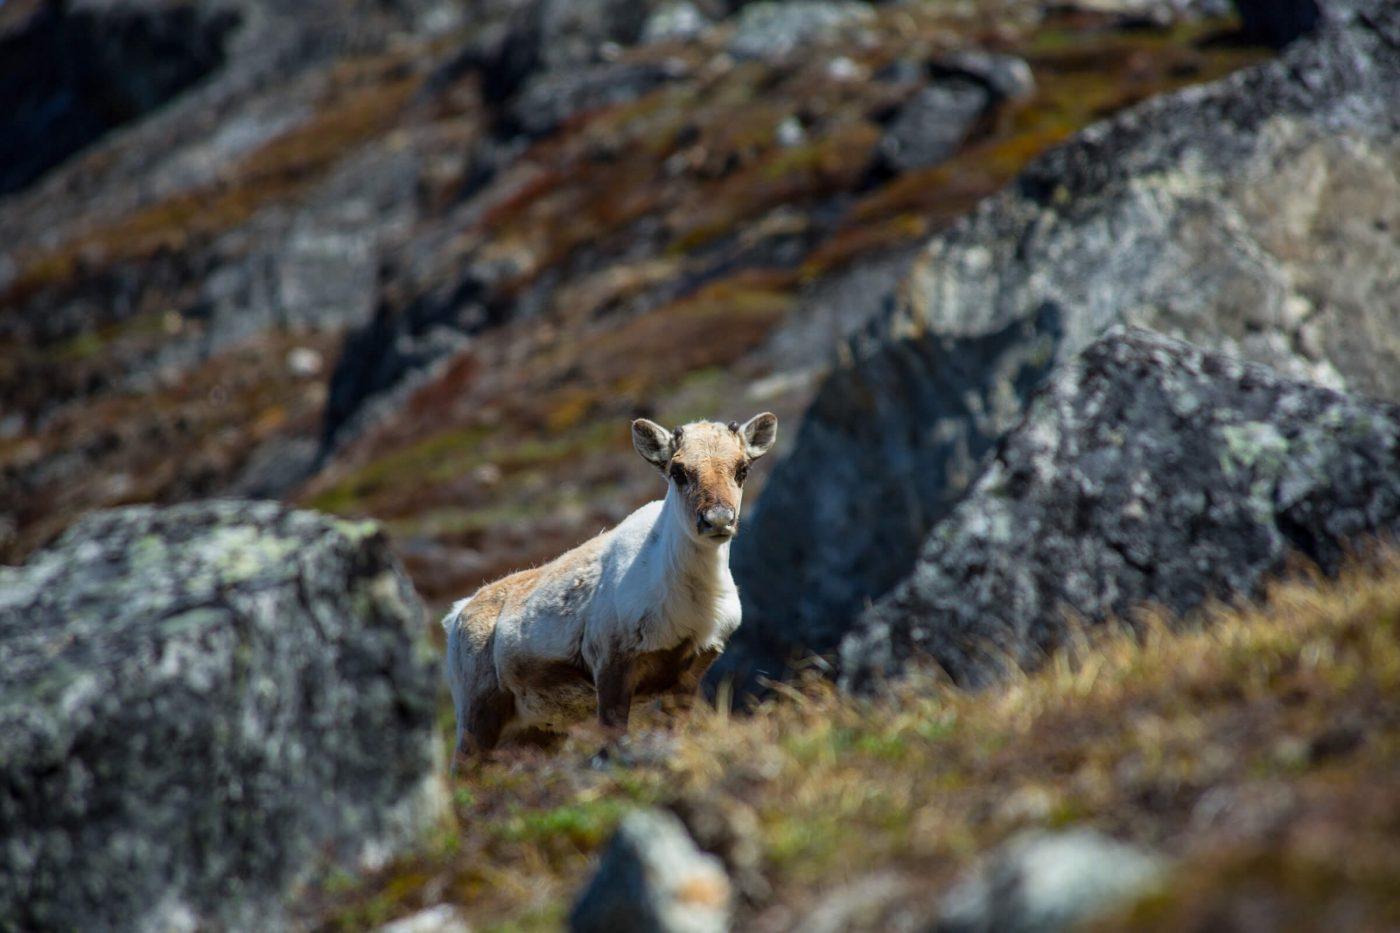 Wildlife in Greenland: Land mammals - Visit Greenland